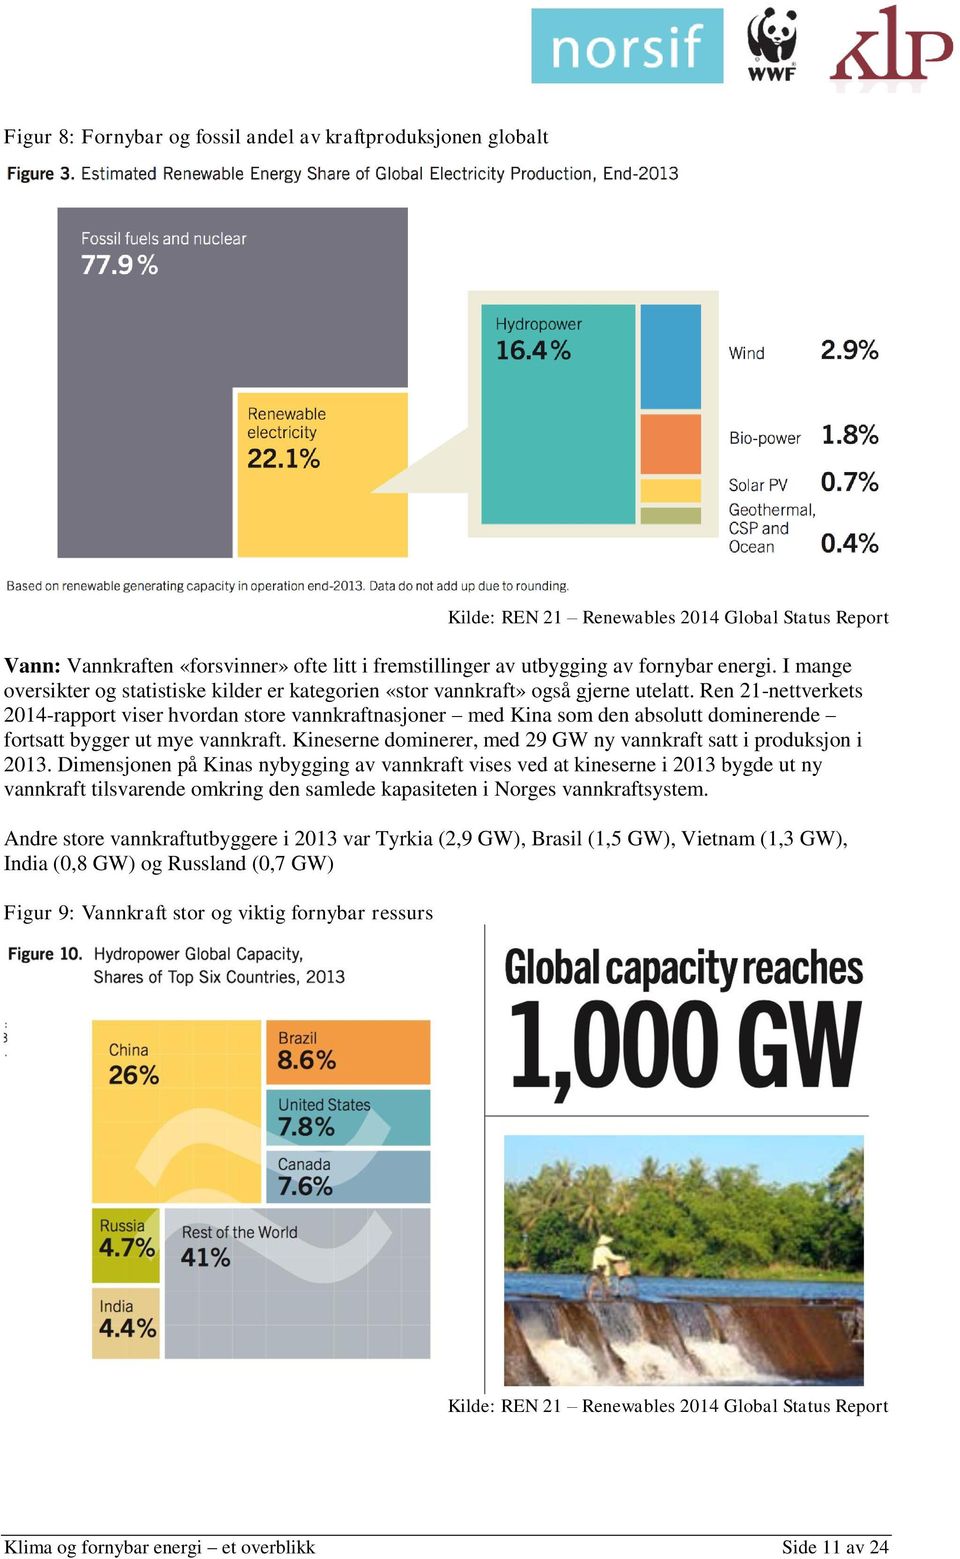 Ren 21-nettverkets 2014-rapport viser hvordan store vannkraftnasjoner med Kina som den absolutt dominerende fortsatt bygger ut mye vannkraft.